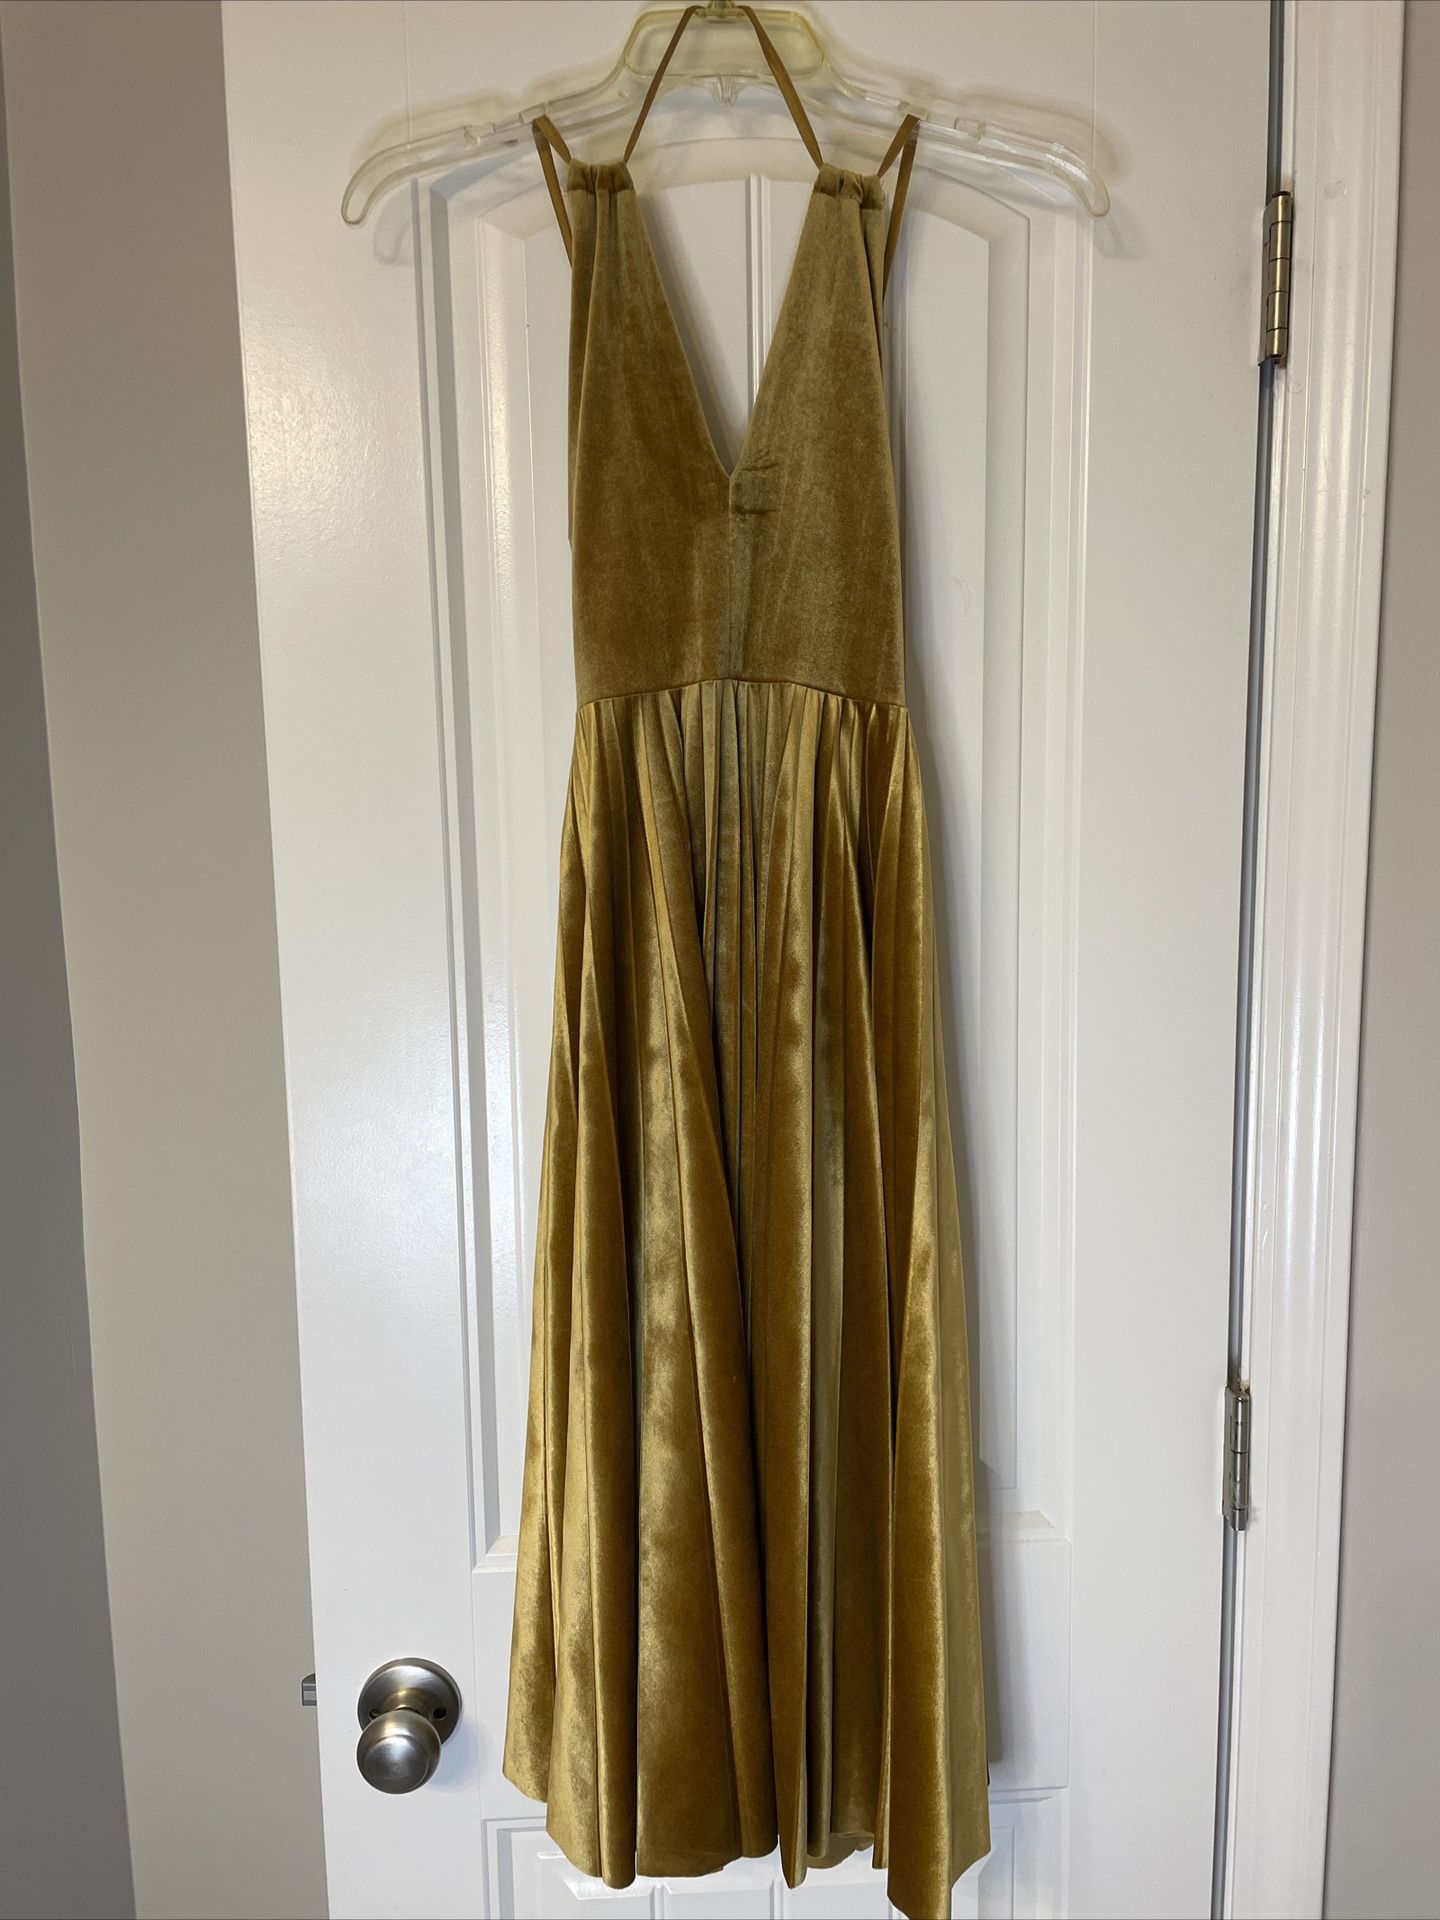 Gianni Bini Velvet Blair Dress for Sale in Lexington, SC - OfferUp